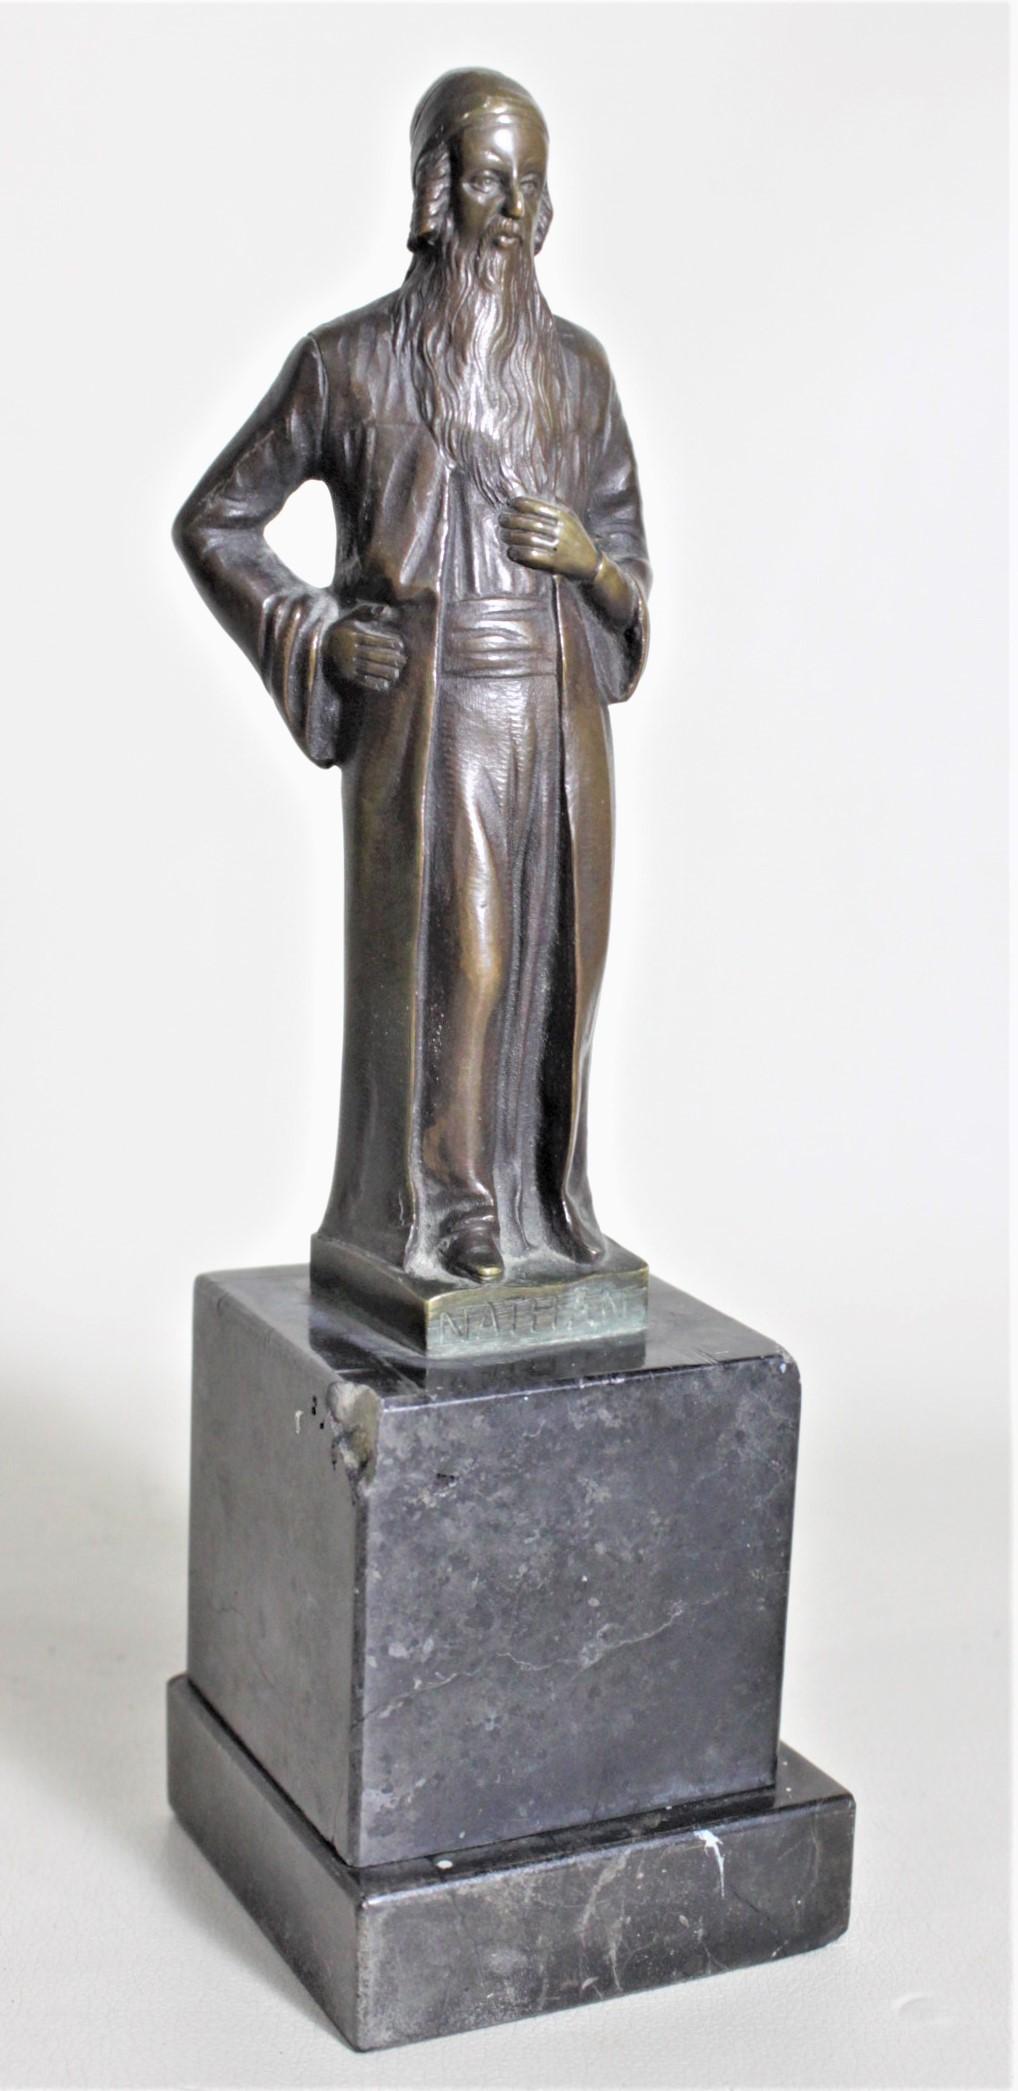 Diese antike Bronzeskulptur wurde um 1920 von Ernest Beck aus Österreich im klassizistischen Revival-Stil geschaffen. Die Skulptur ist eine Studie von 